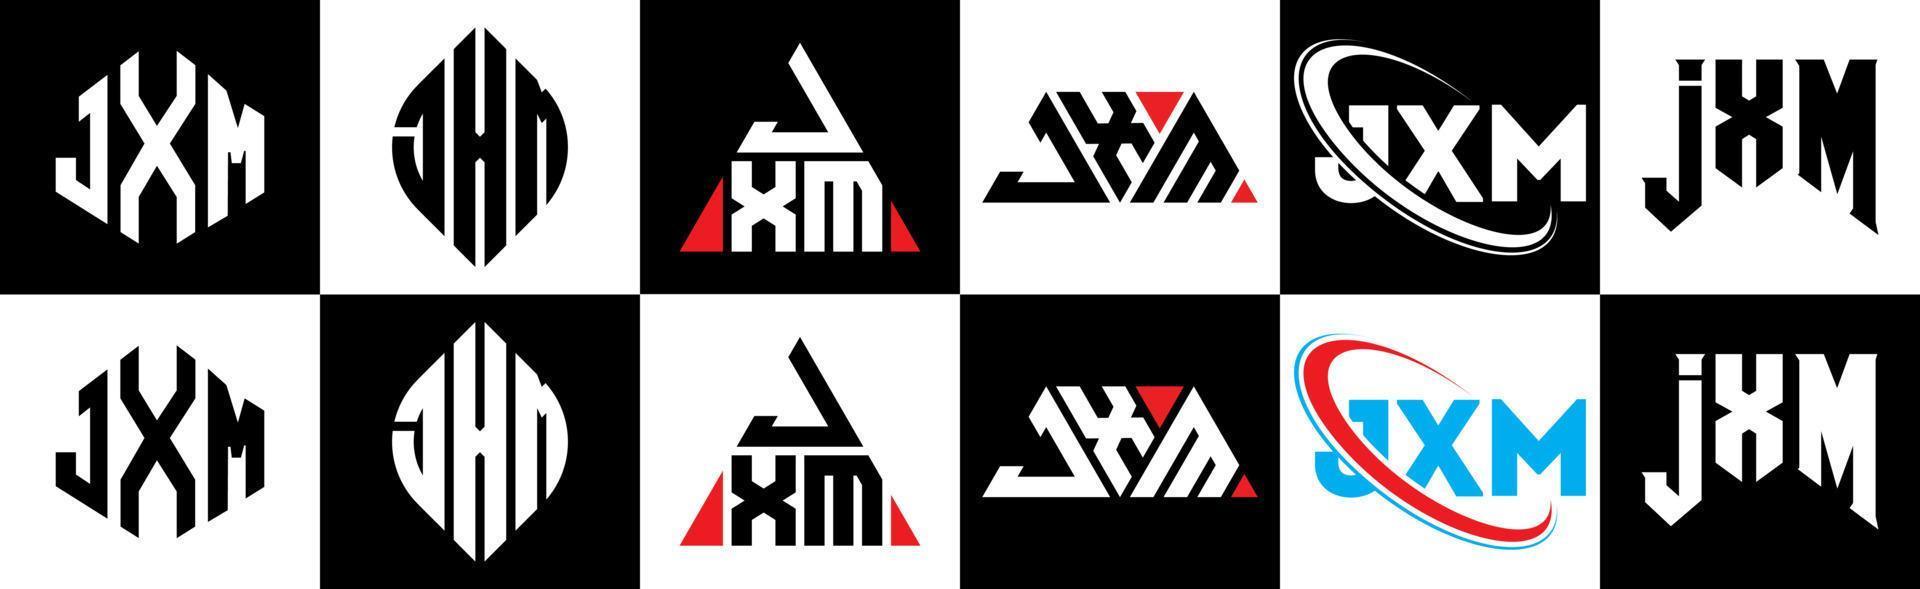 Diseño de logotipo de letra jxm en seis estilos. jxm polígono, círculo, triángulo, hexágono, estilo plano y simple con logotipo de letra de variación de color blanco y negro en una mesa de trabajo. logotipo minimalista y clásico de jxm vector